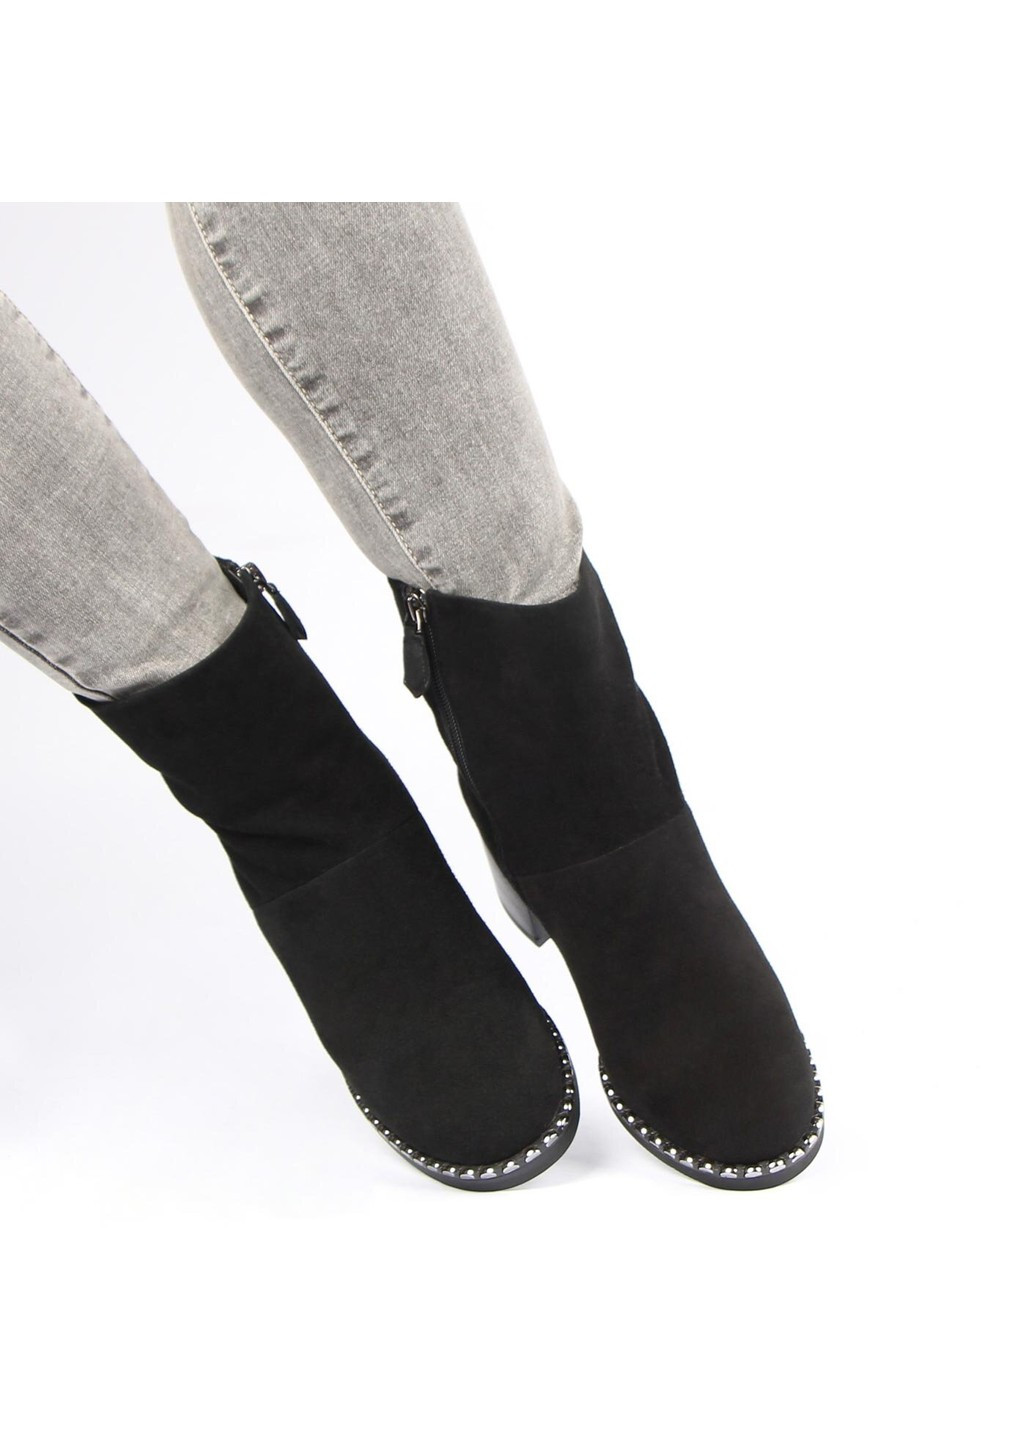 Зимние женские ботинки на каблуке 17652 Glossi из натуральной замши